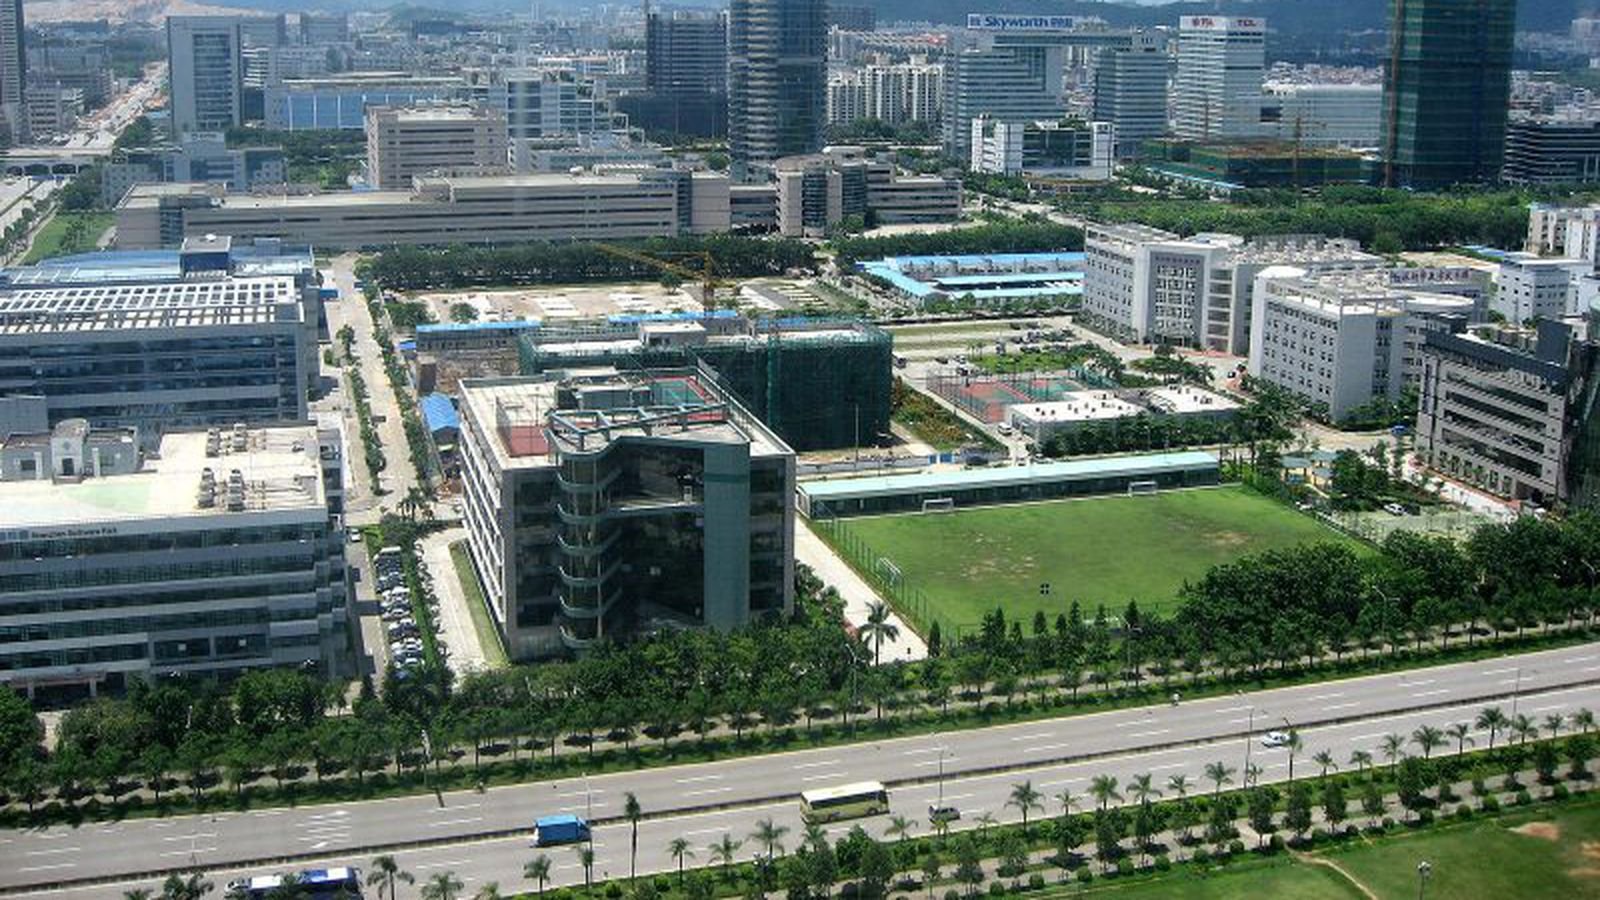 Parque industrial de alta tecnologia em Shenzhen, na China. (Fonte: Mac Rumor / Reprodução)